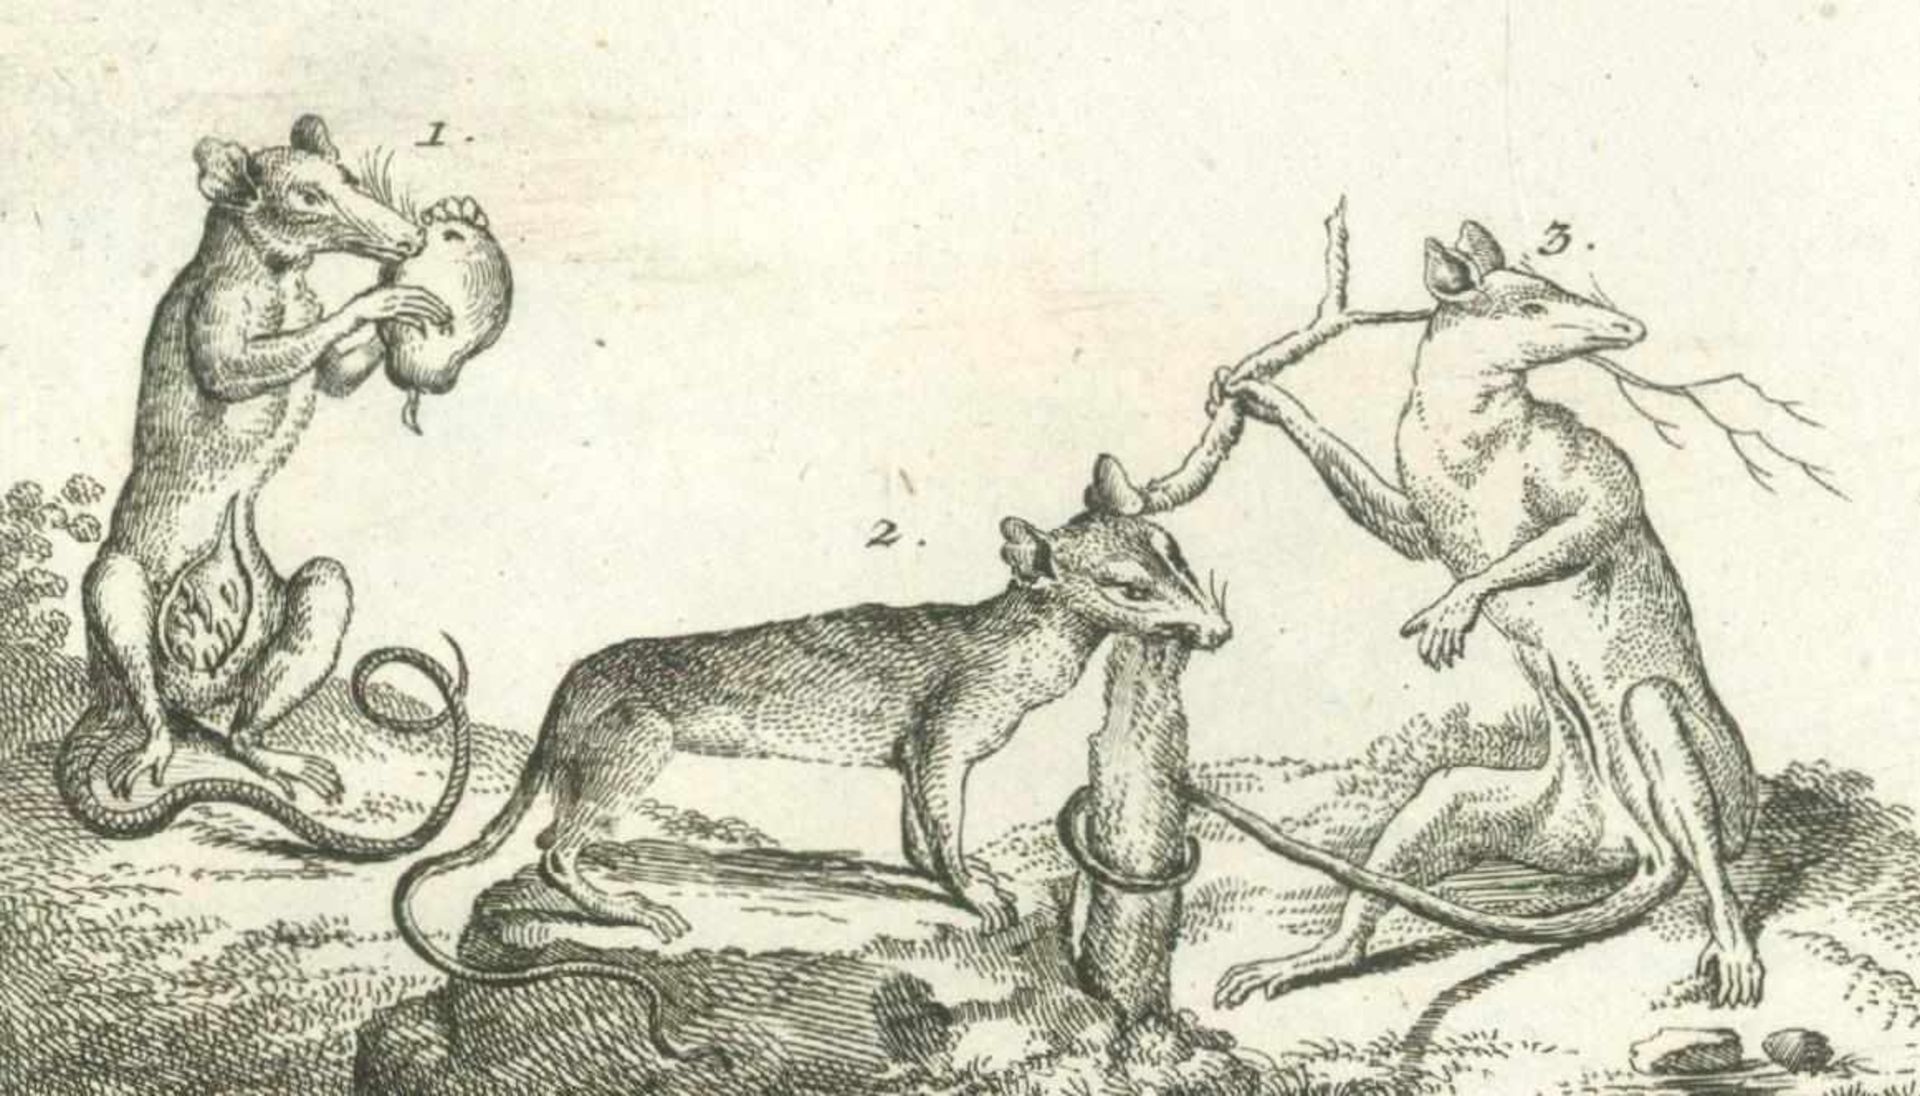 Riedel,G.F.Naturhistorische Abbildungen. Aus den besten grössern Werken ins kleine gezeichnet und